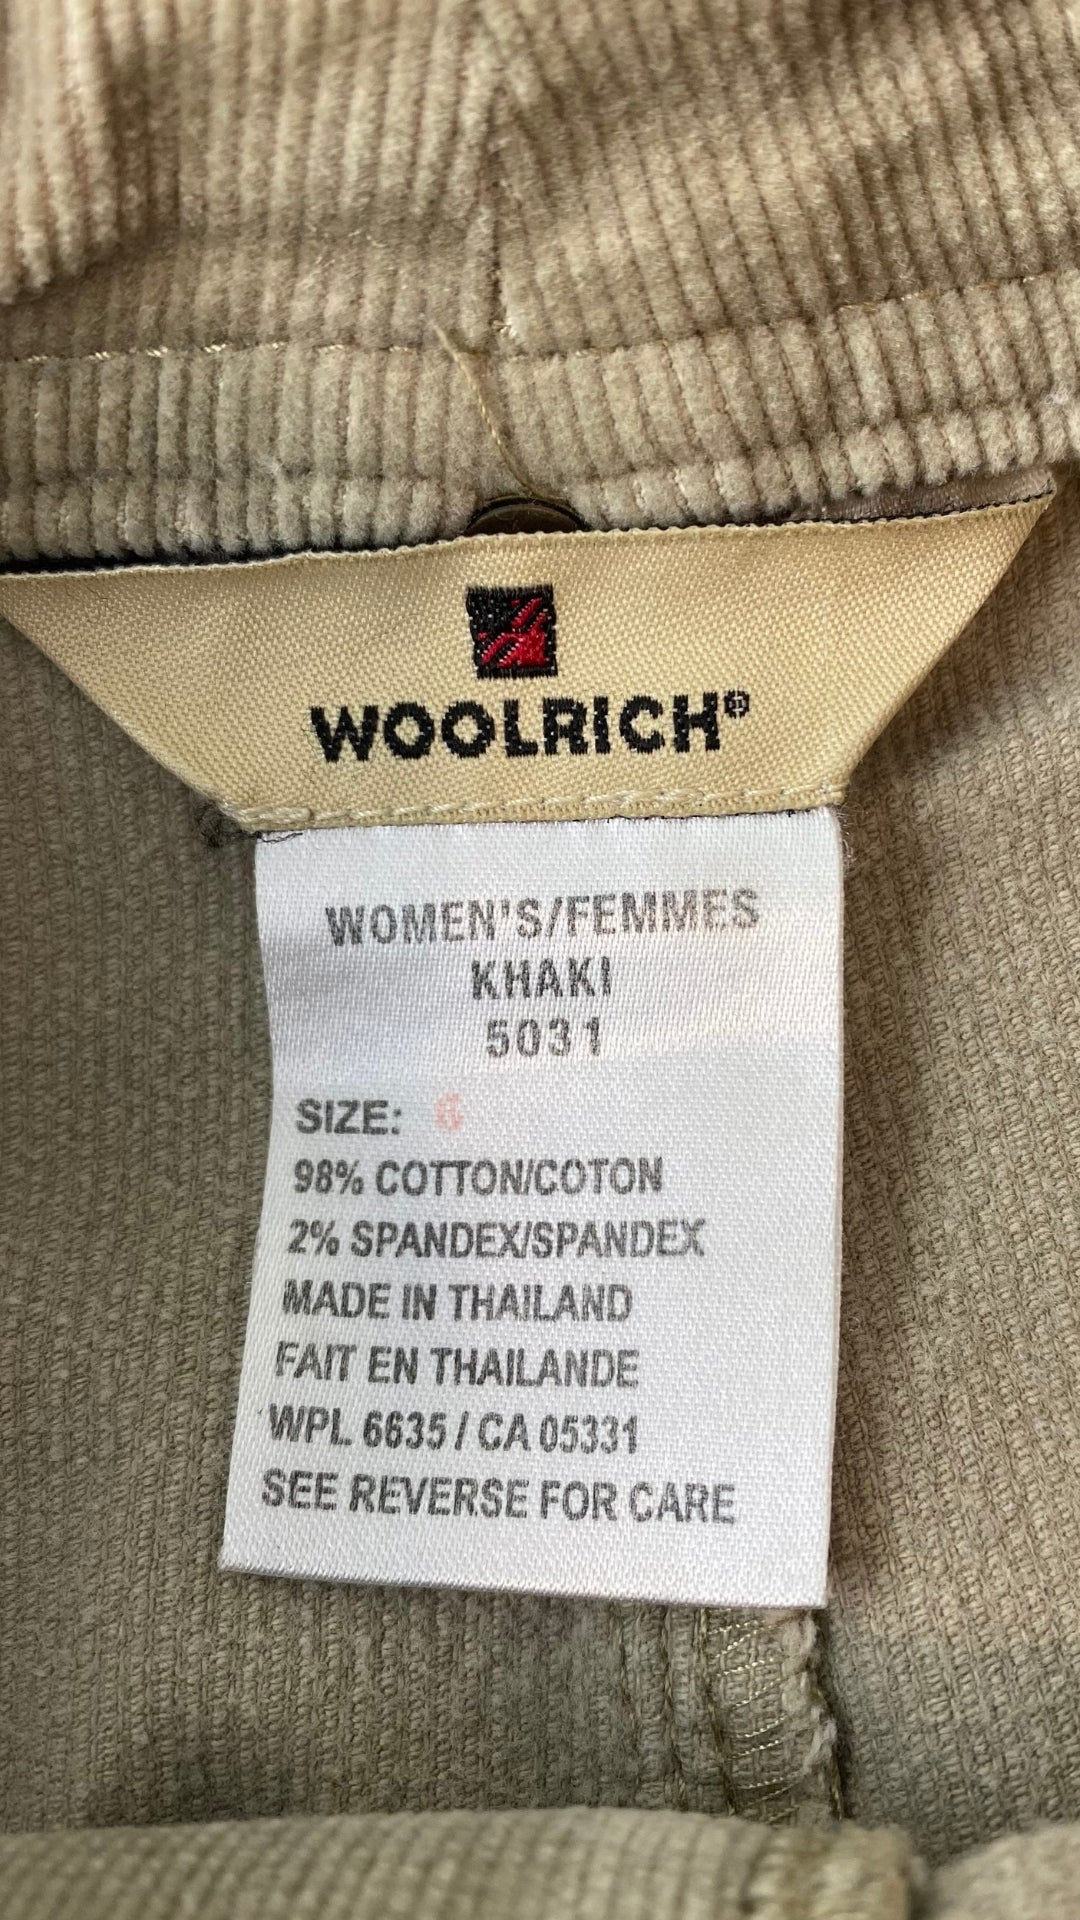 Jupe sable en velours côtelé extensible Woolrich, taille 6. Vue de l'étiquette de marque, taille, composition.